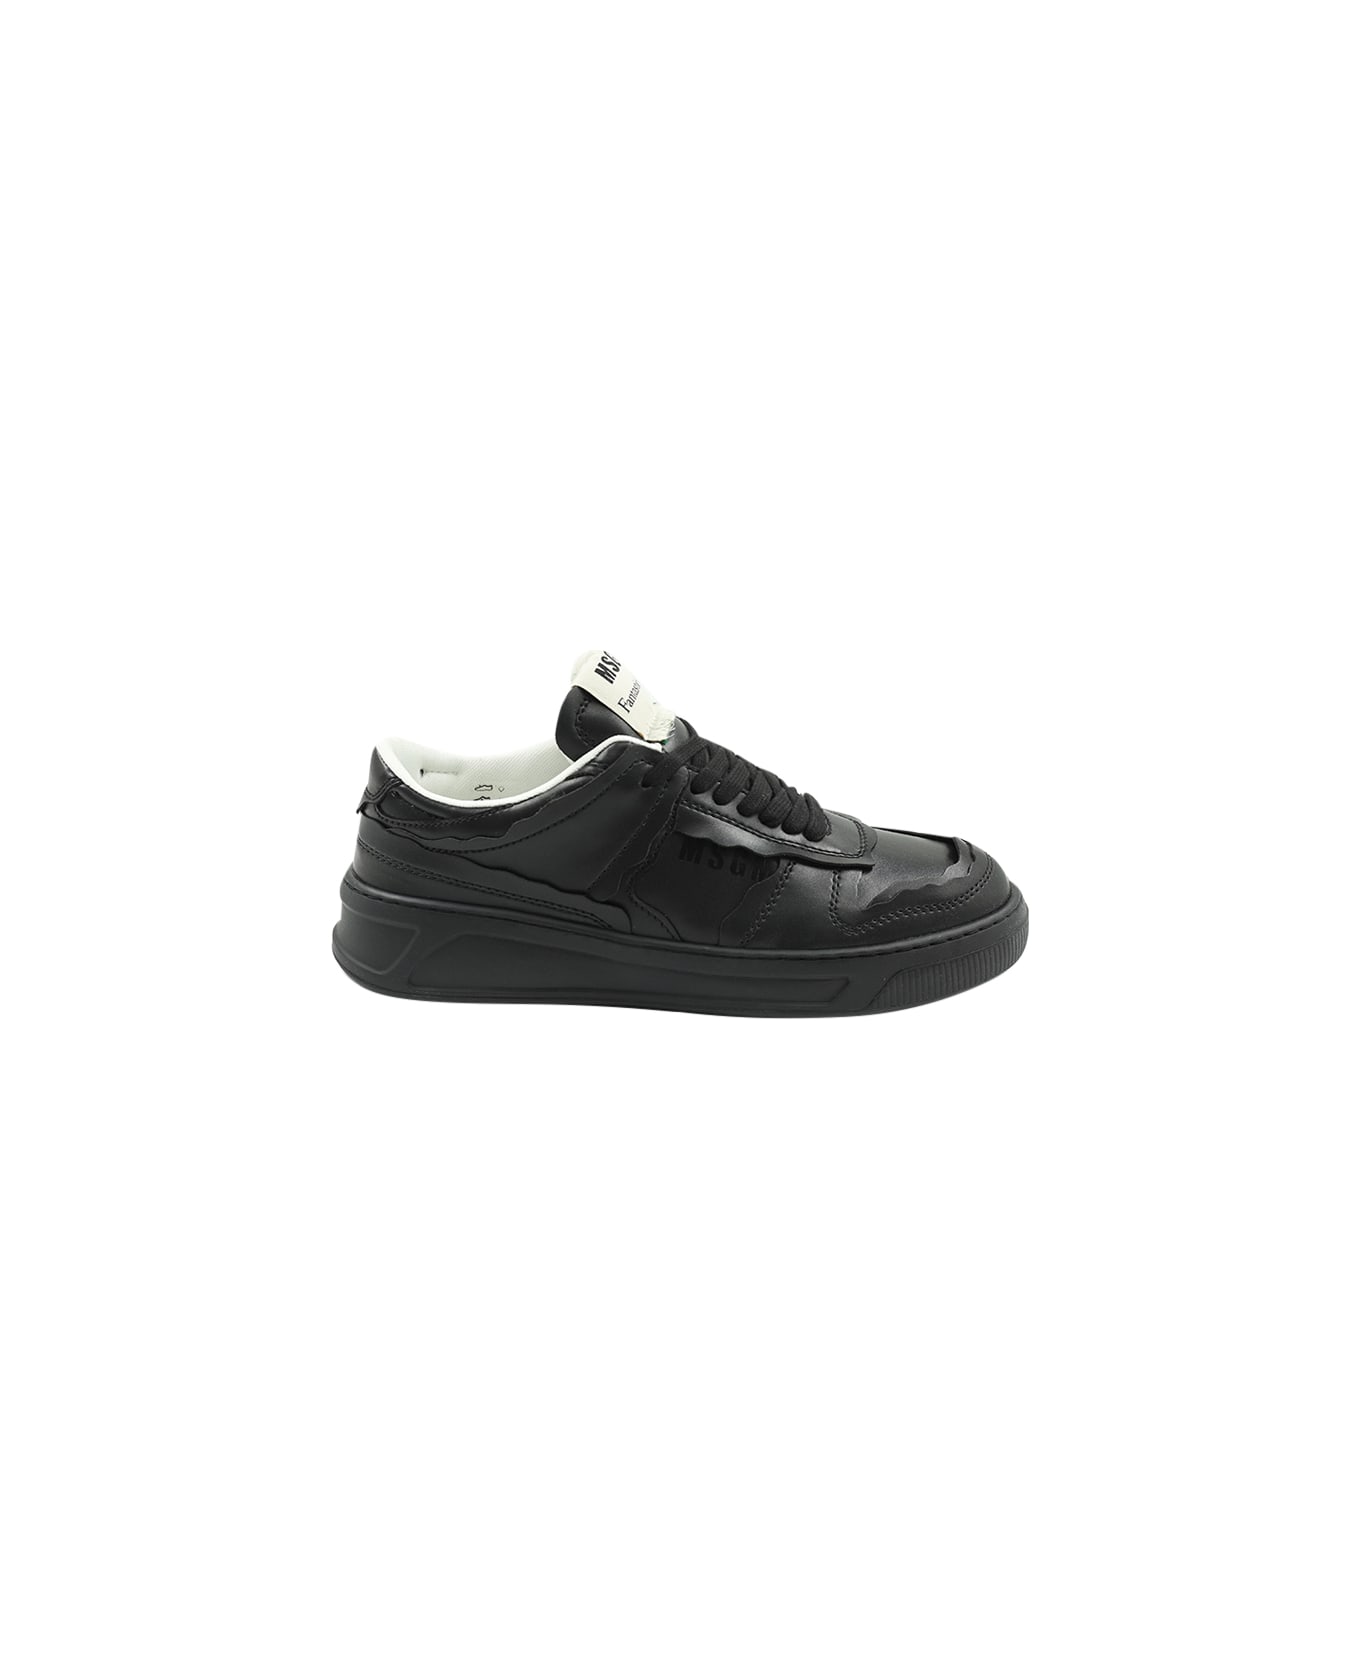 MSGM Sneakers Fg1 - Black